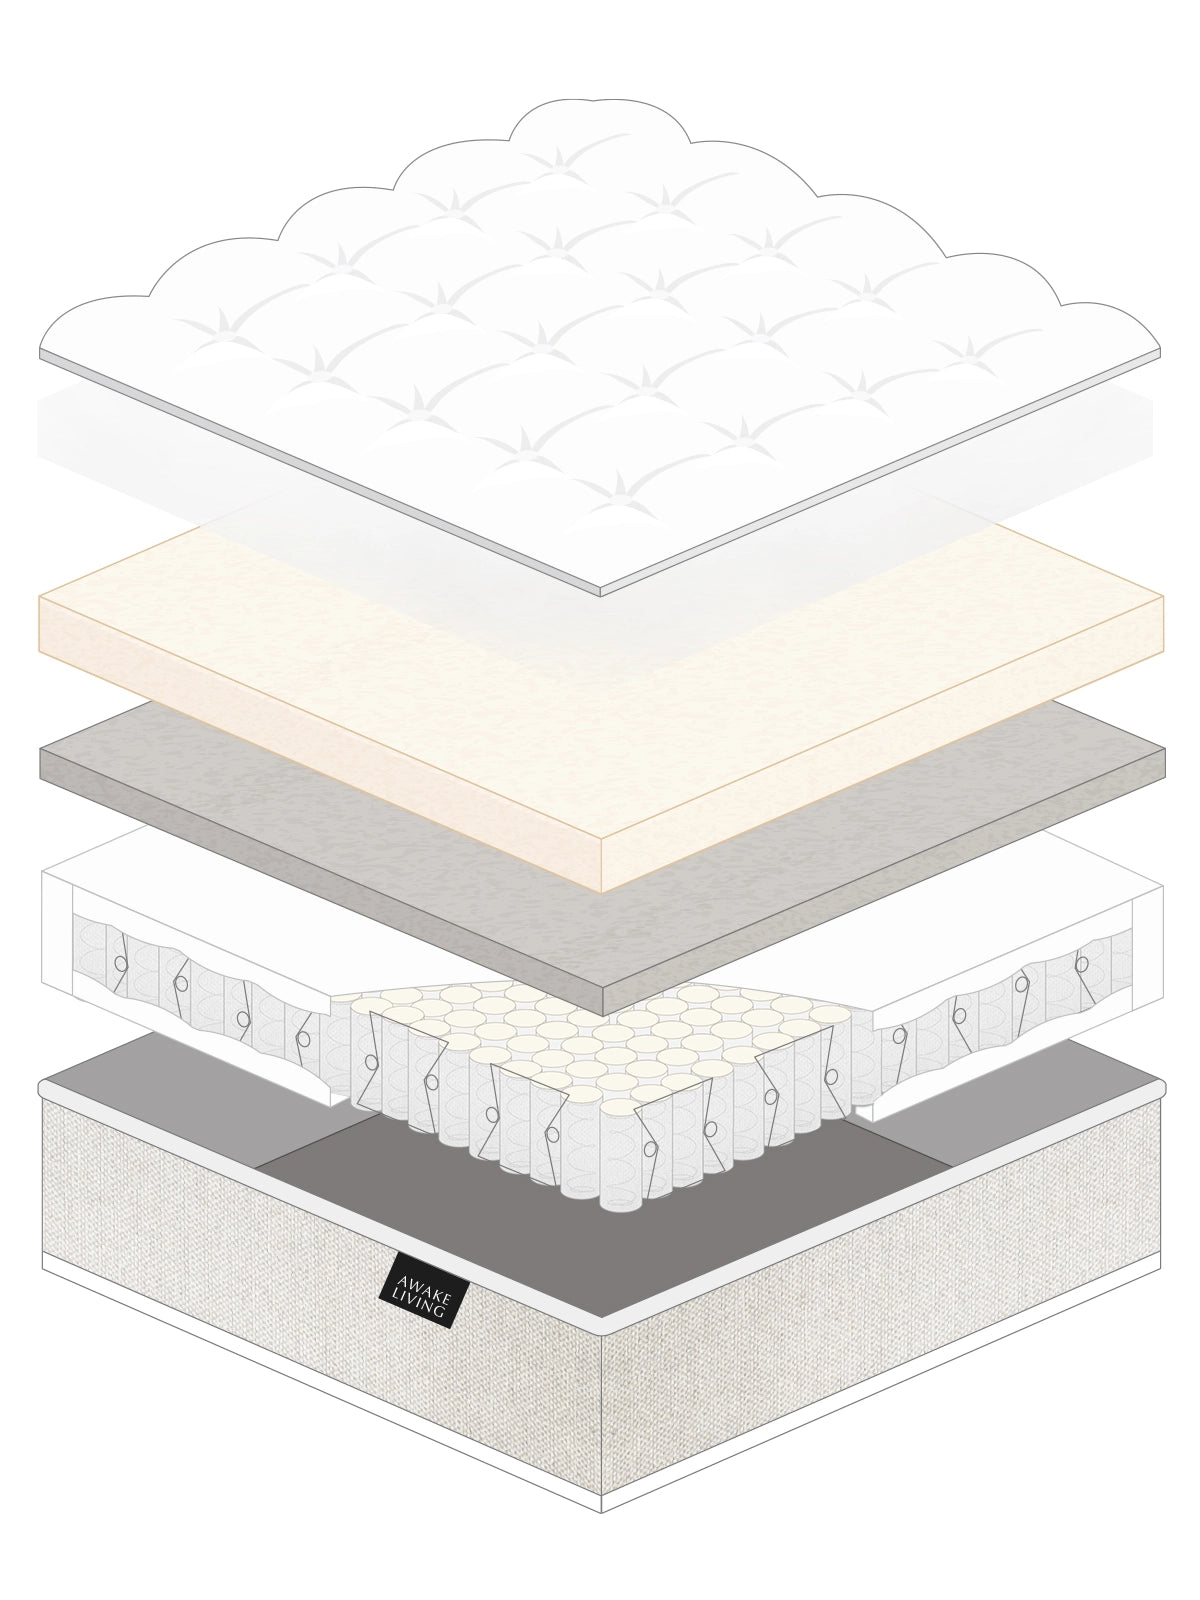 Lite 2.0 輕舒柔眠天絲獨立筒床墊分層圖 - 全部材質分層圖